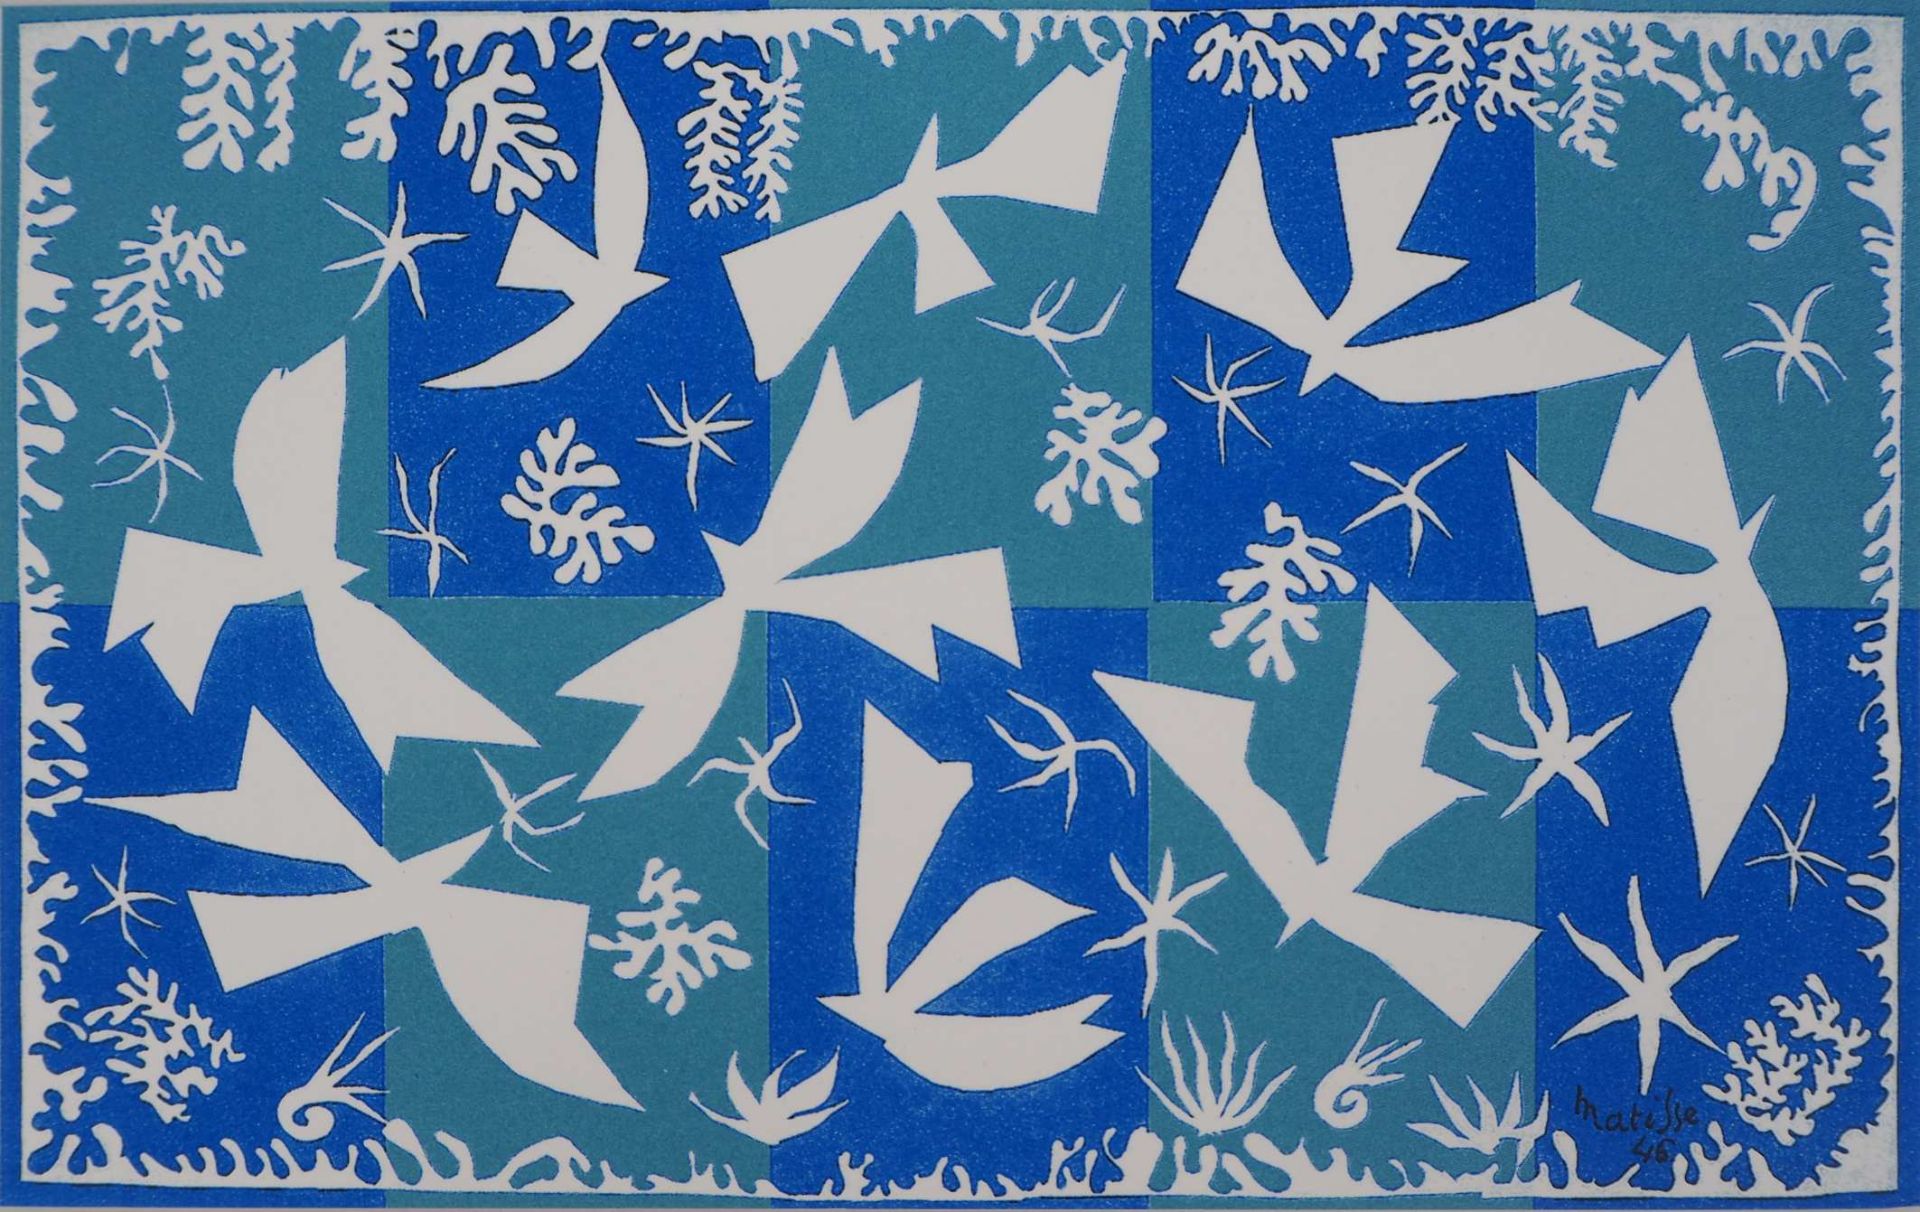 Henri Matisse (1869-1954) (after)